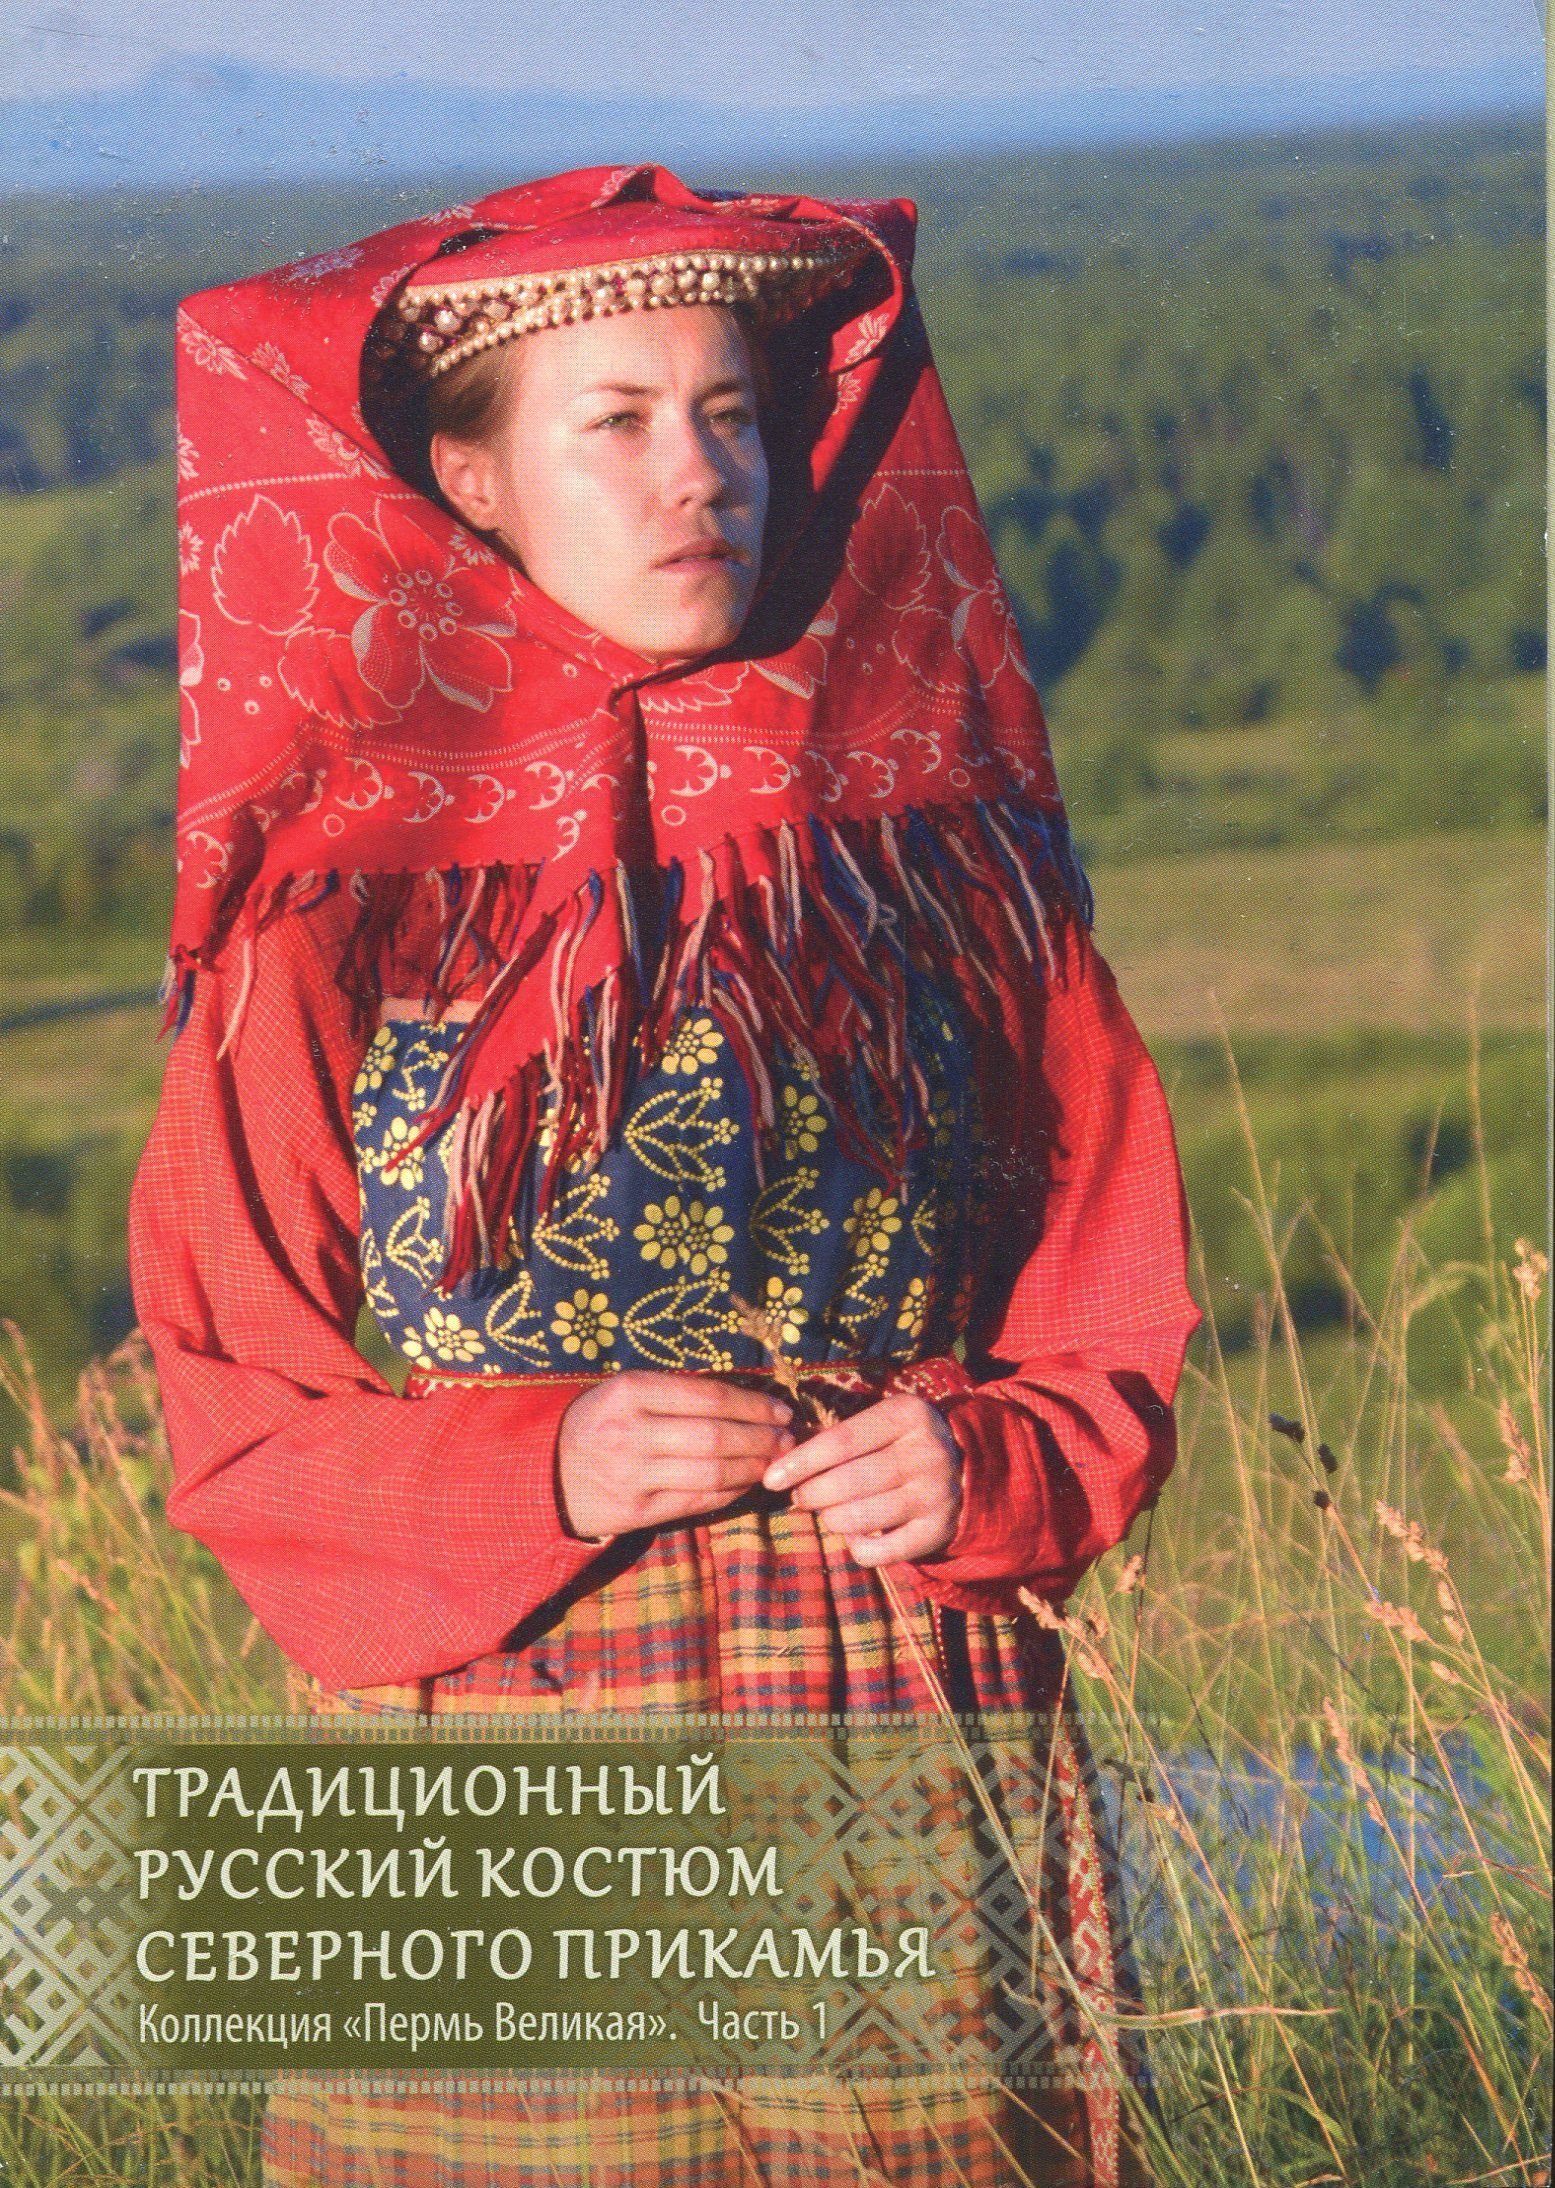 Коми-язьвинцы национальный костюм